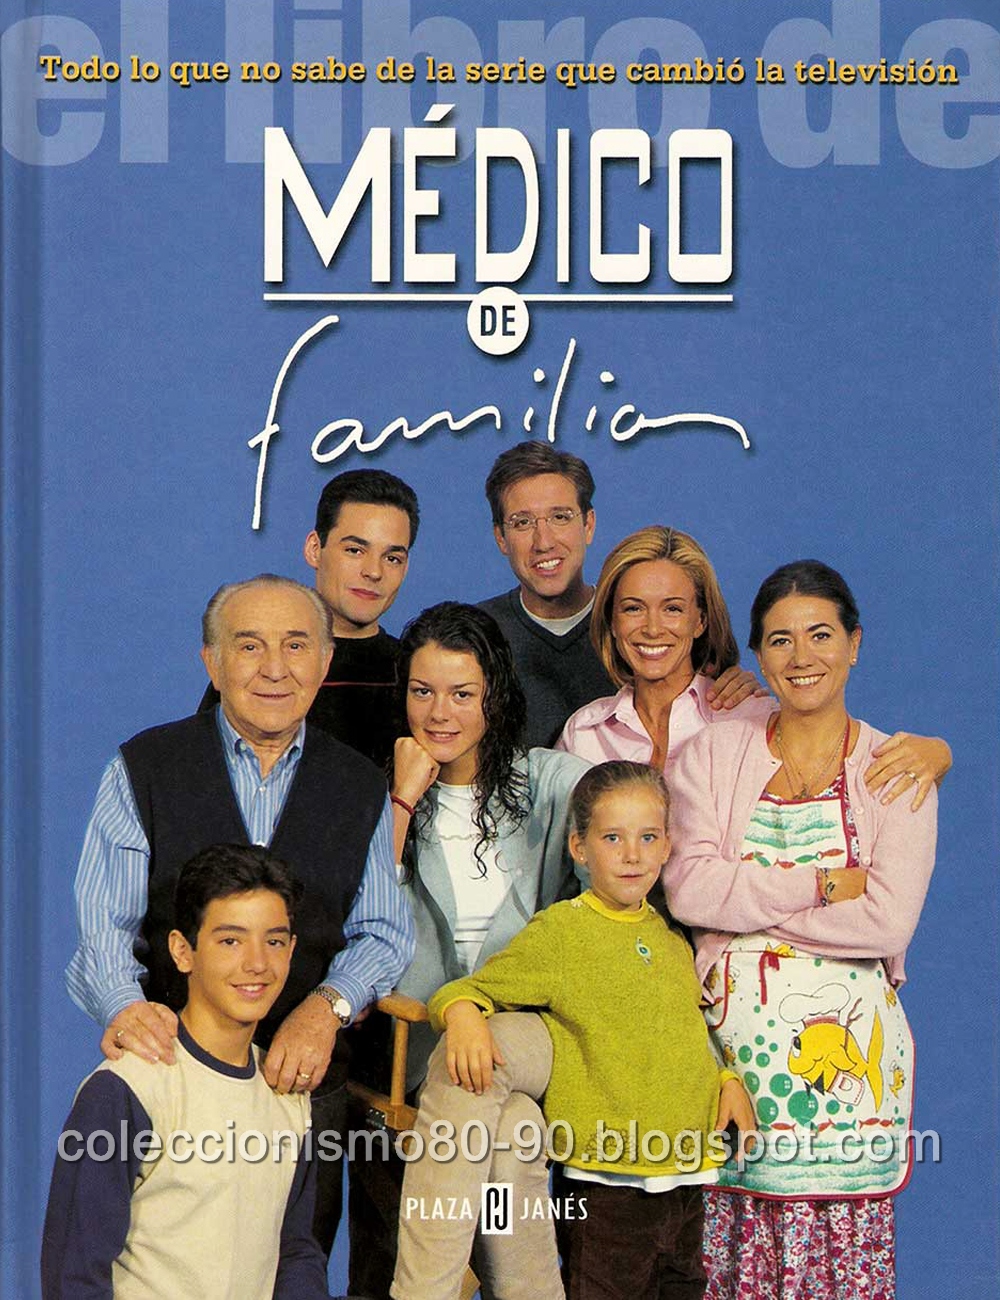 Coleccionismo 80-90: MÉDICO DE FAMILIA: EL LIBRO - Plaza & Janés (1999)